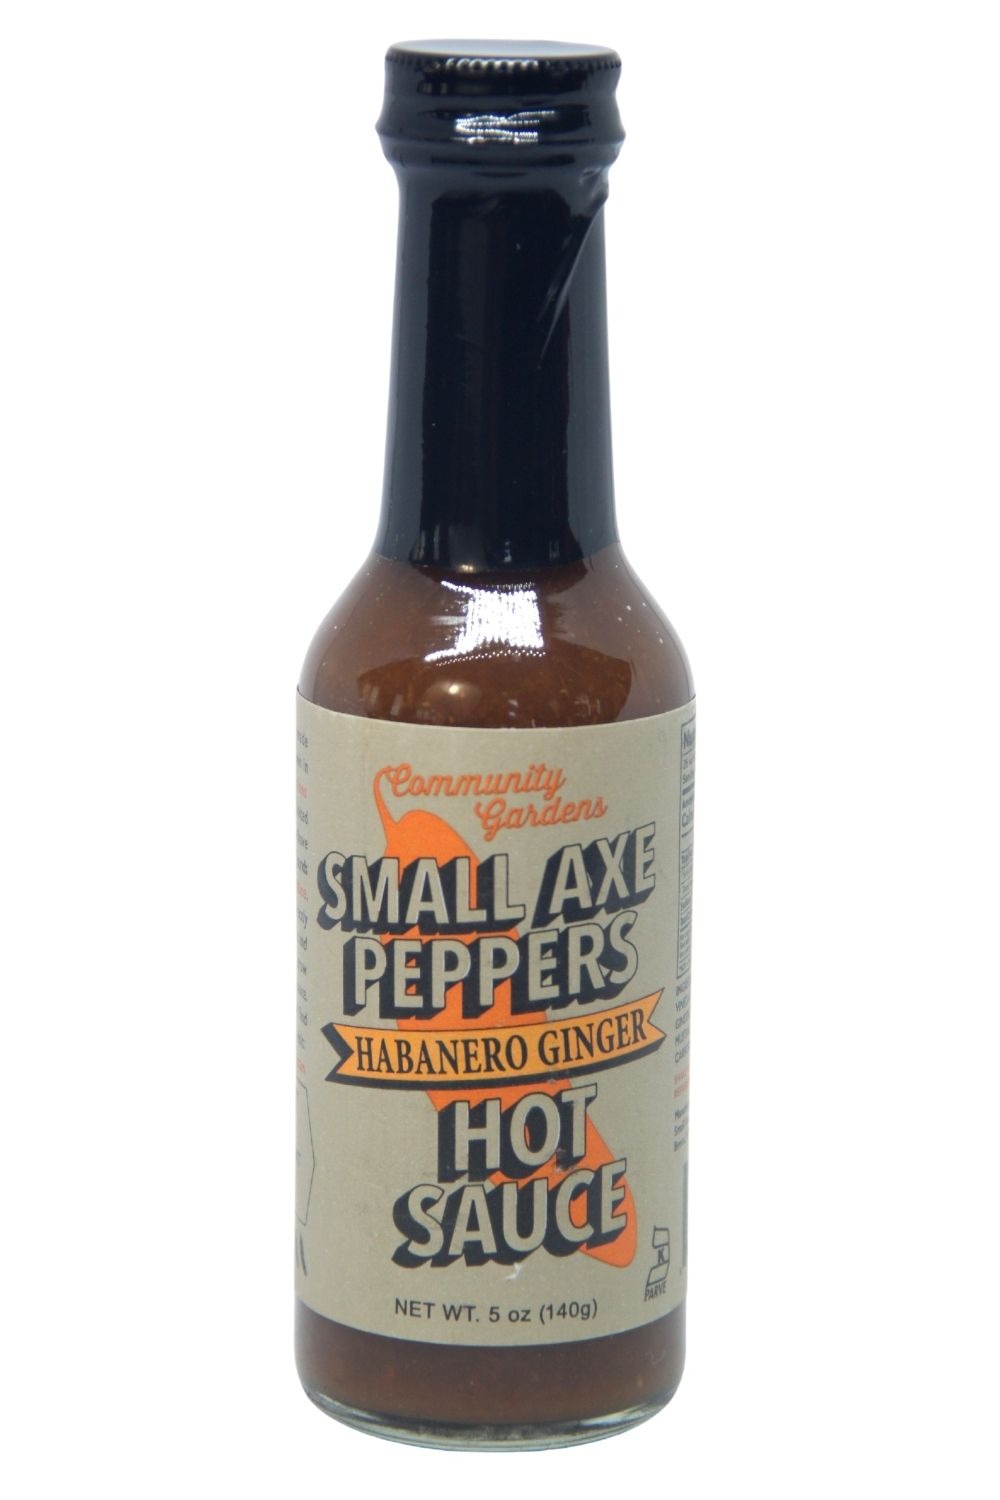 Vermeend regelmatig Alexander Graham Bell Small Axe Peppers Habanero Ginger Hot Sauce 140g - Sauce Mania